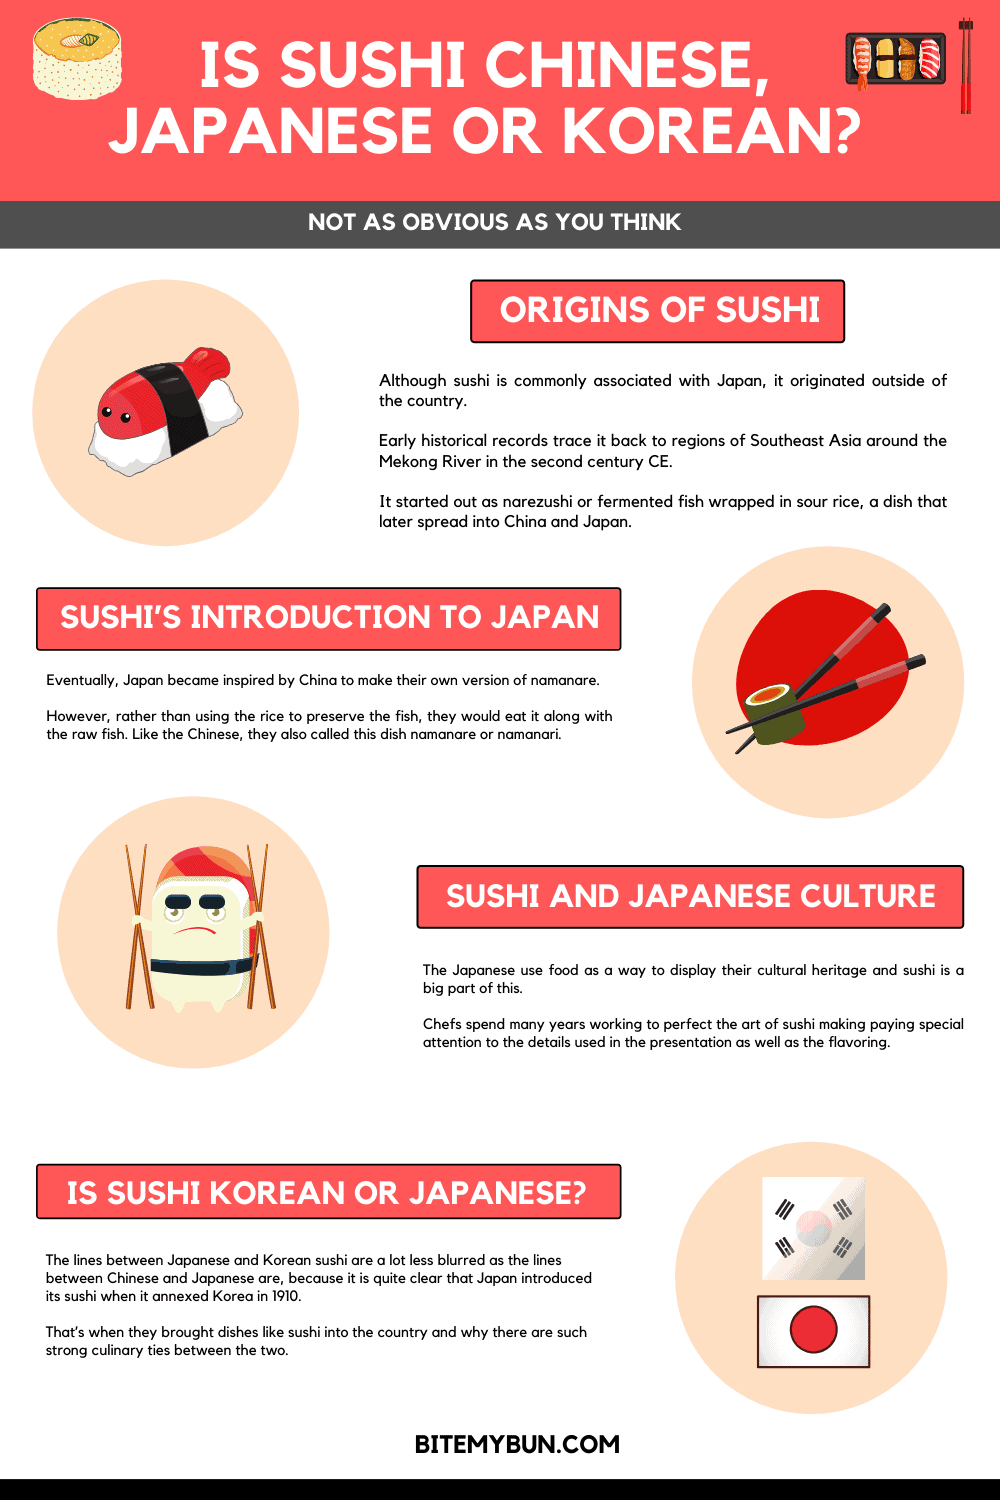 Origin of Sushi